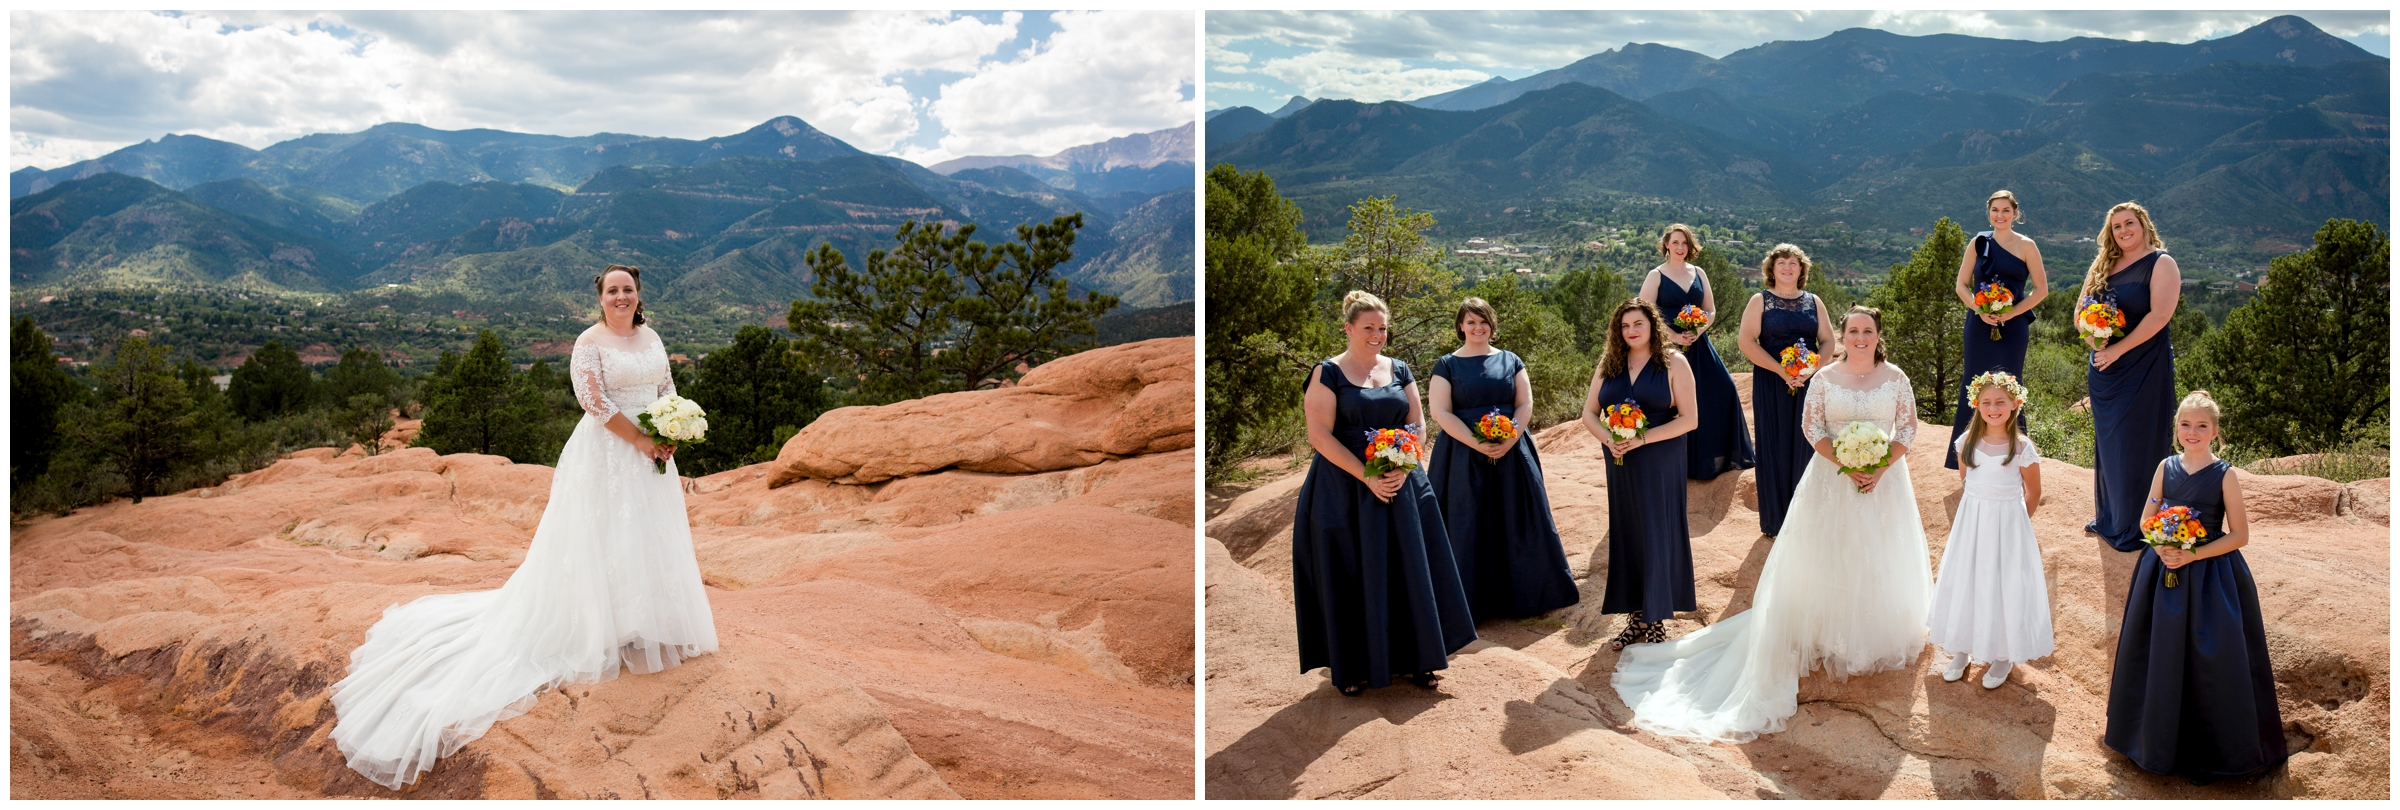 orange and blue bridal party at Colorado Springs wedding 